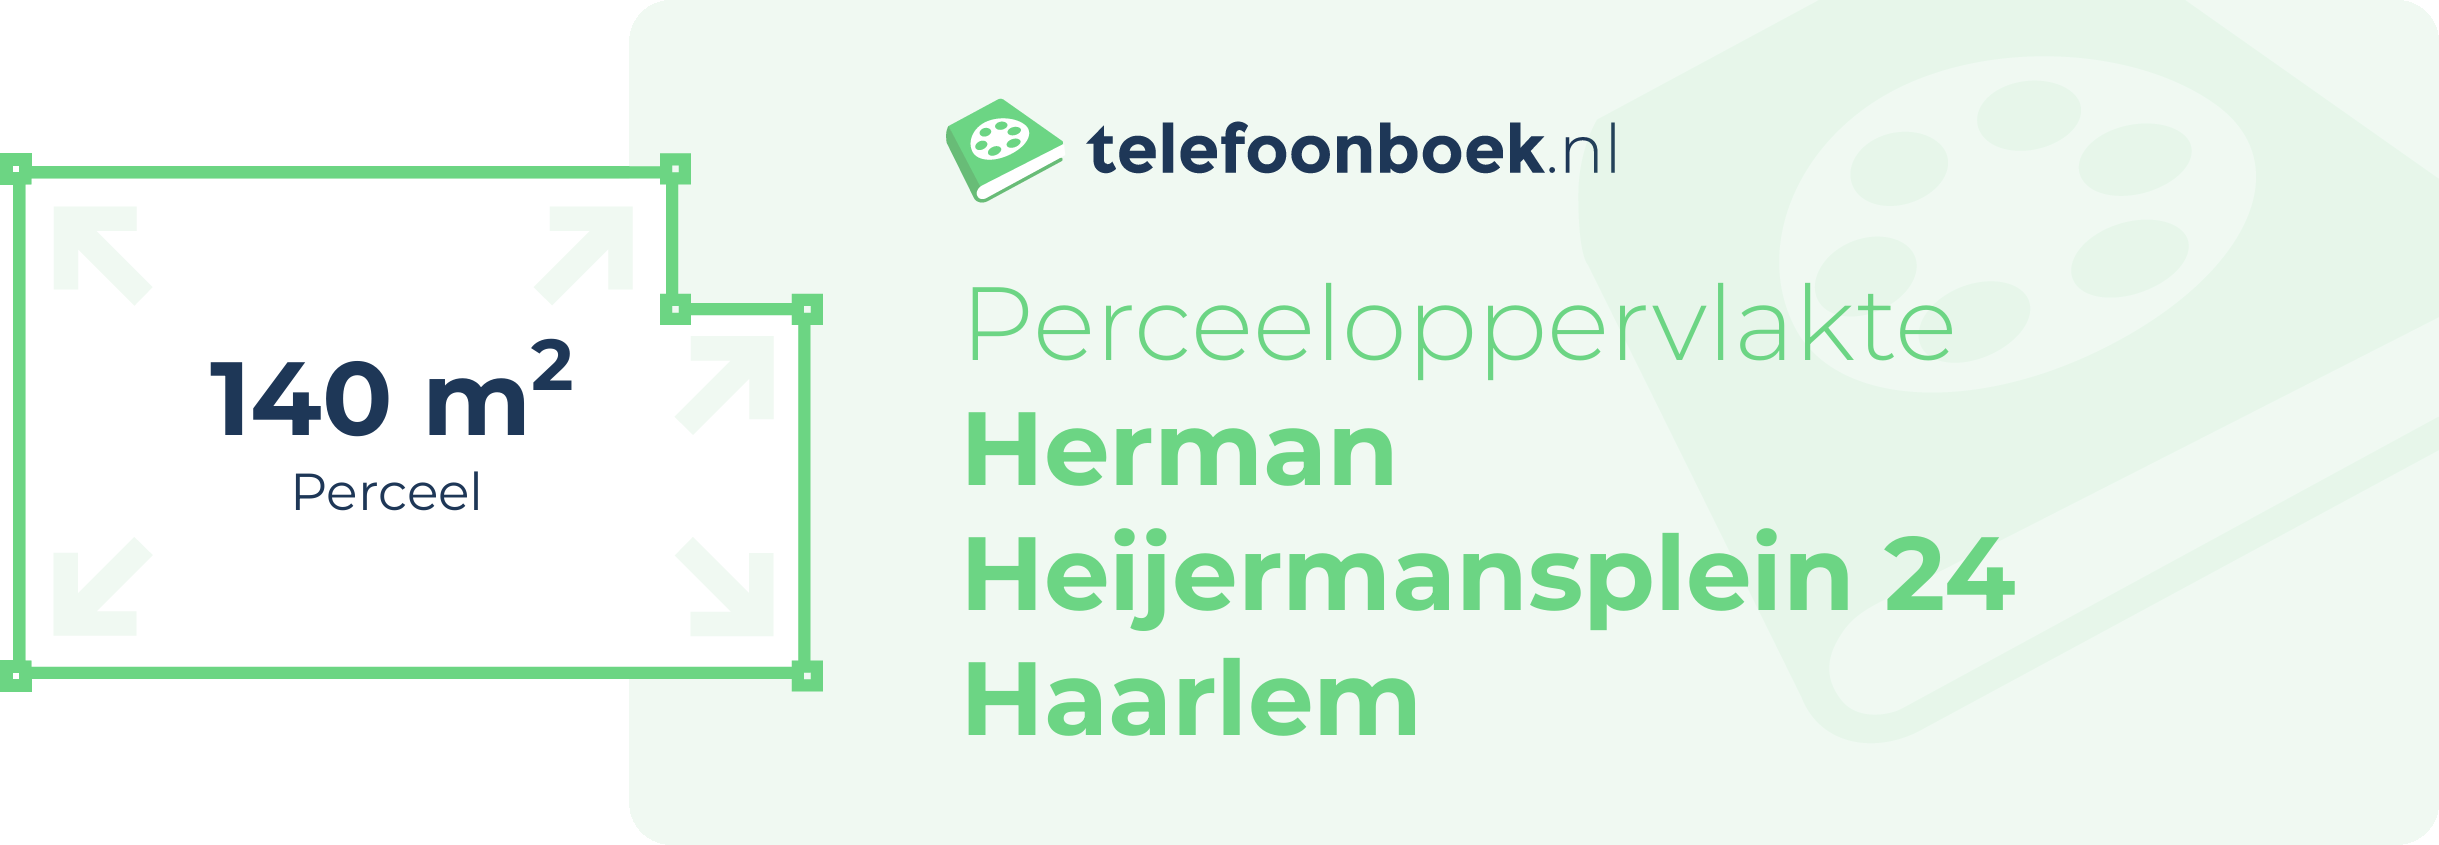 Perceeloppervlakte Herman Heijermansplein 24 Haarlem